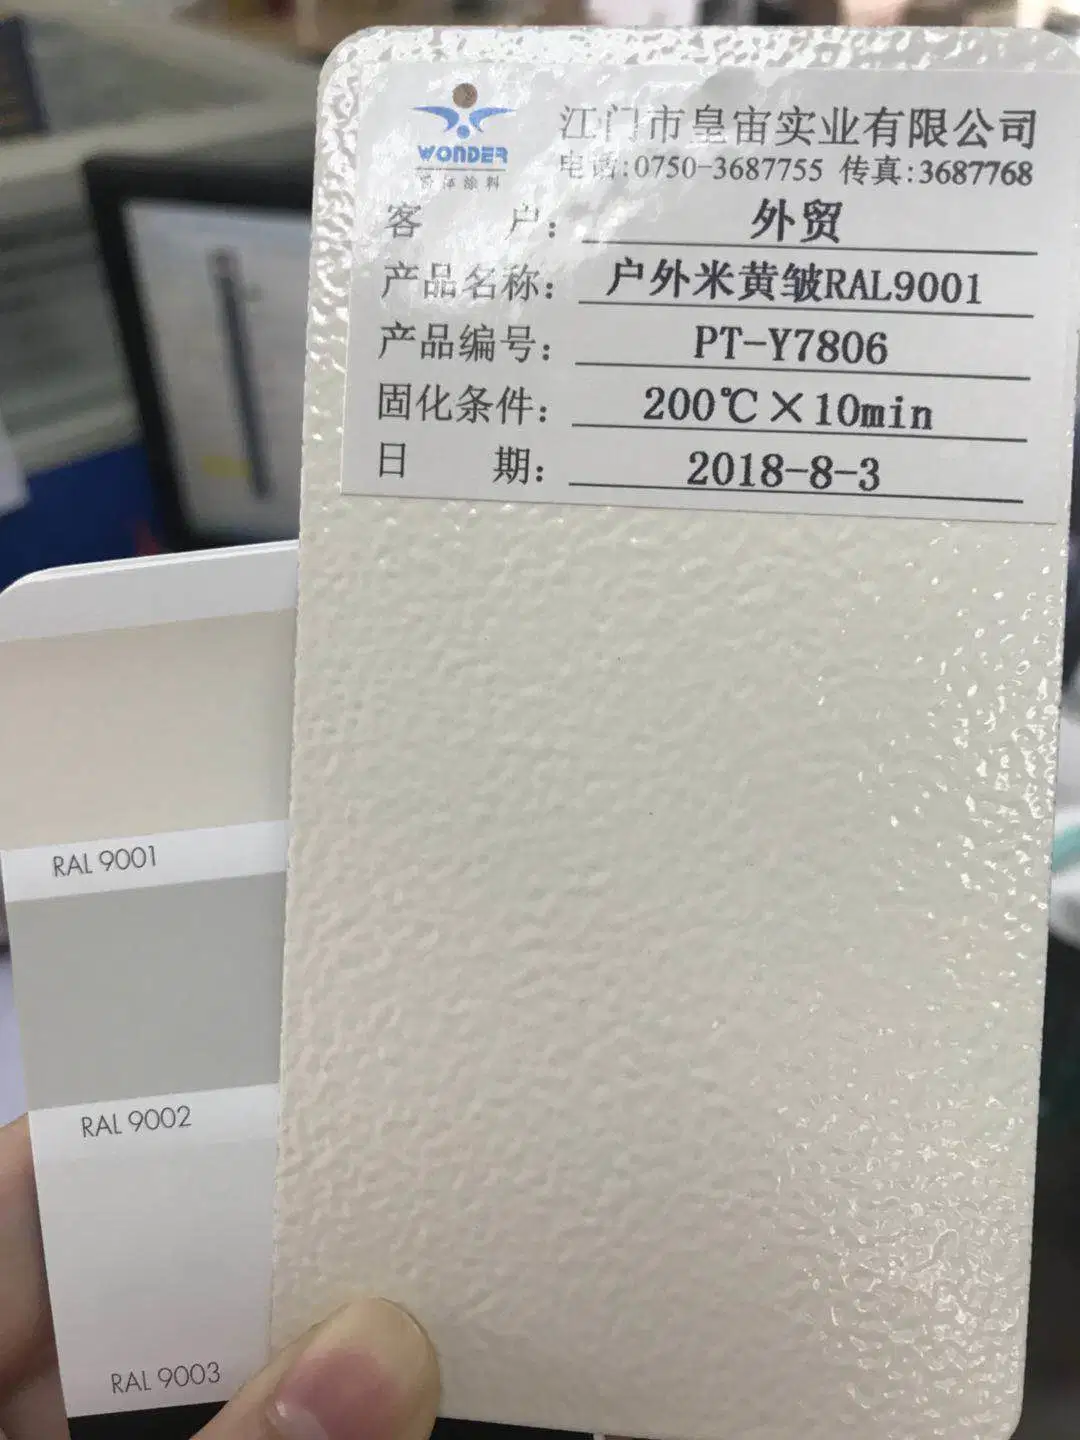 RAL7032 Shagreen Faltenstruktur Grau Puder Beschichtung Textur Farbe für Stahlrahmen